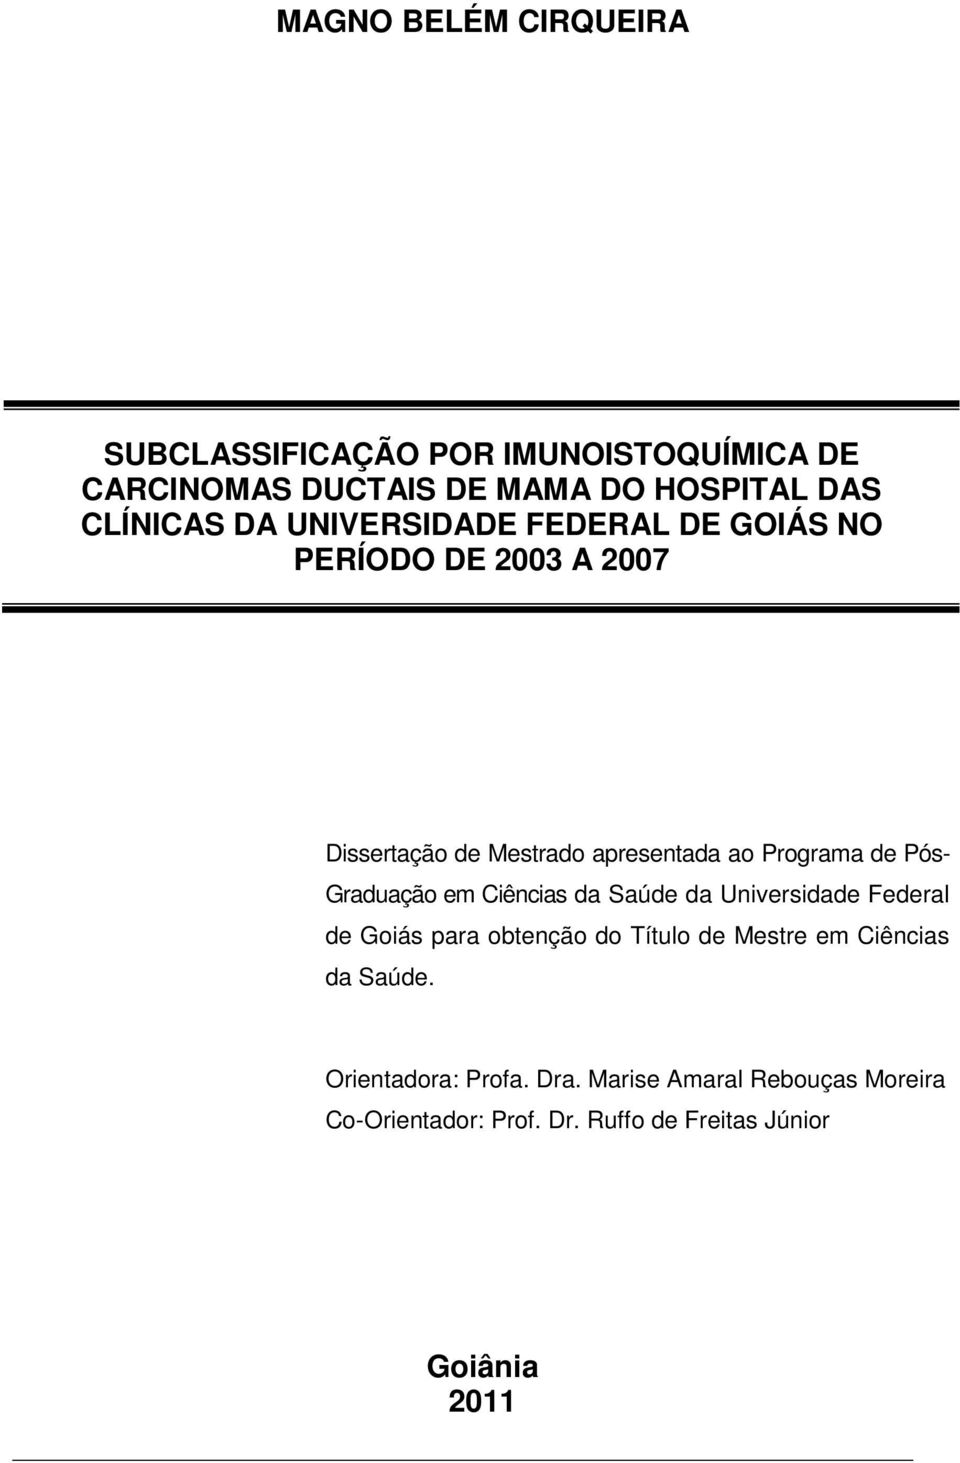 Graduação em Ciências da Saúde da Universidade Federal de Goiás para obtenção do Título de Mestre em Ciências da